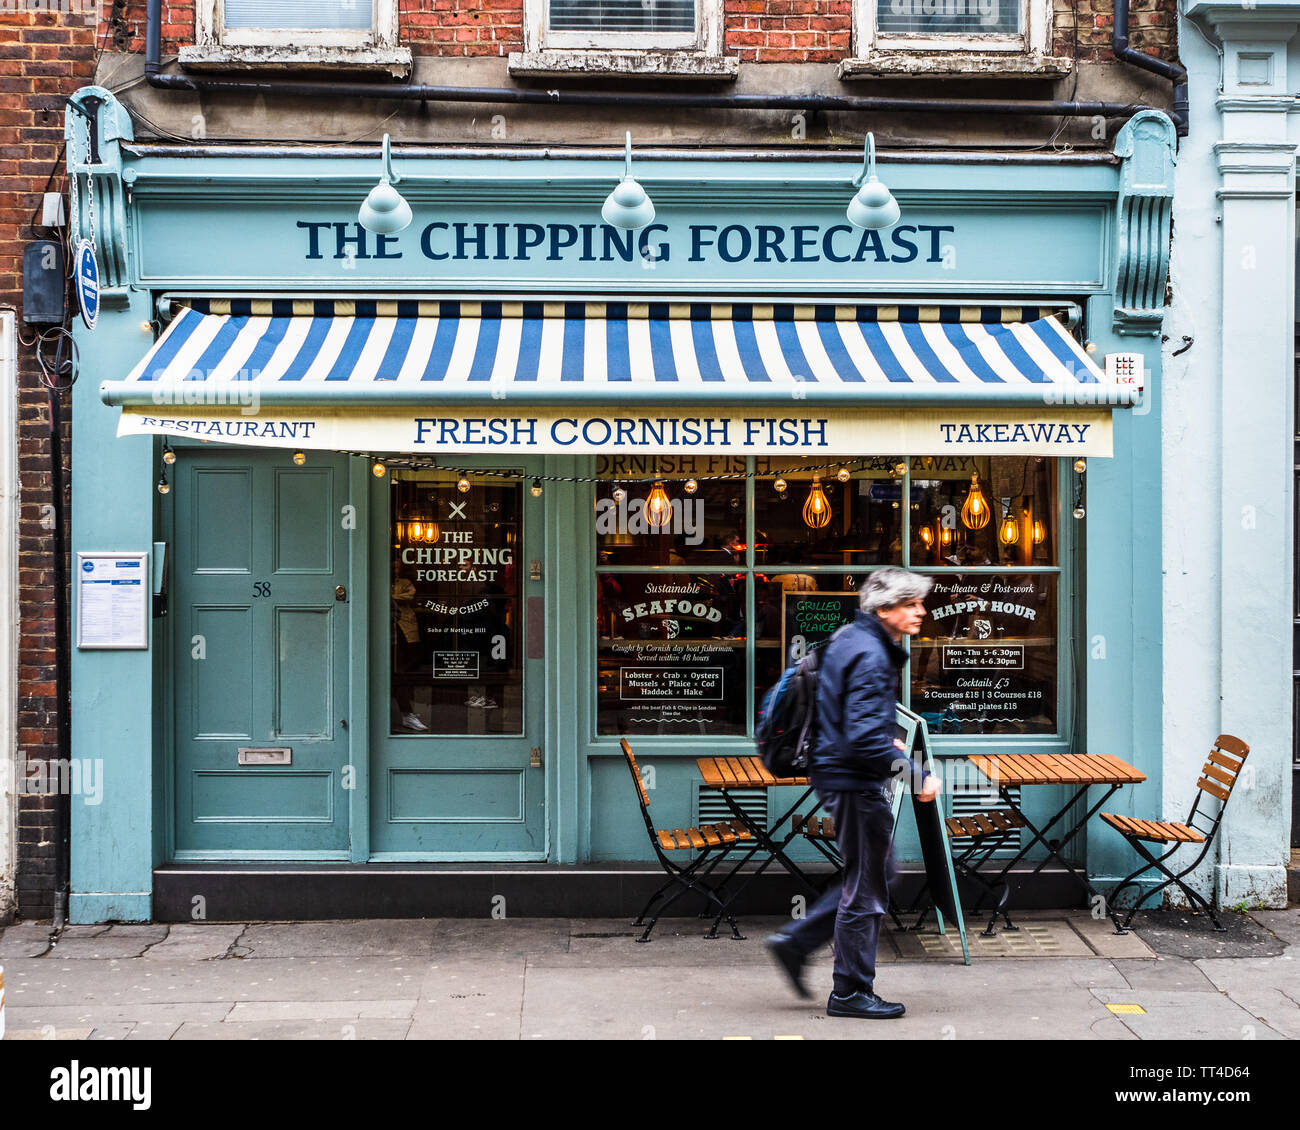 Le poisson que vous recherchiez un chipping Forecast et Friterie à Soho Londres - le restaurant Chipping Forecast rue grecque Soho Londres Banque D'Images